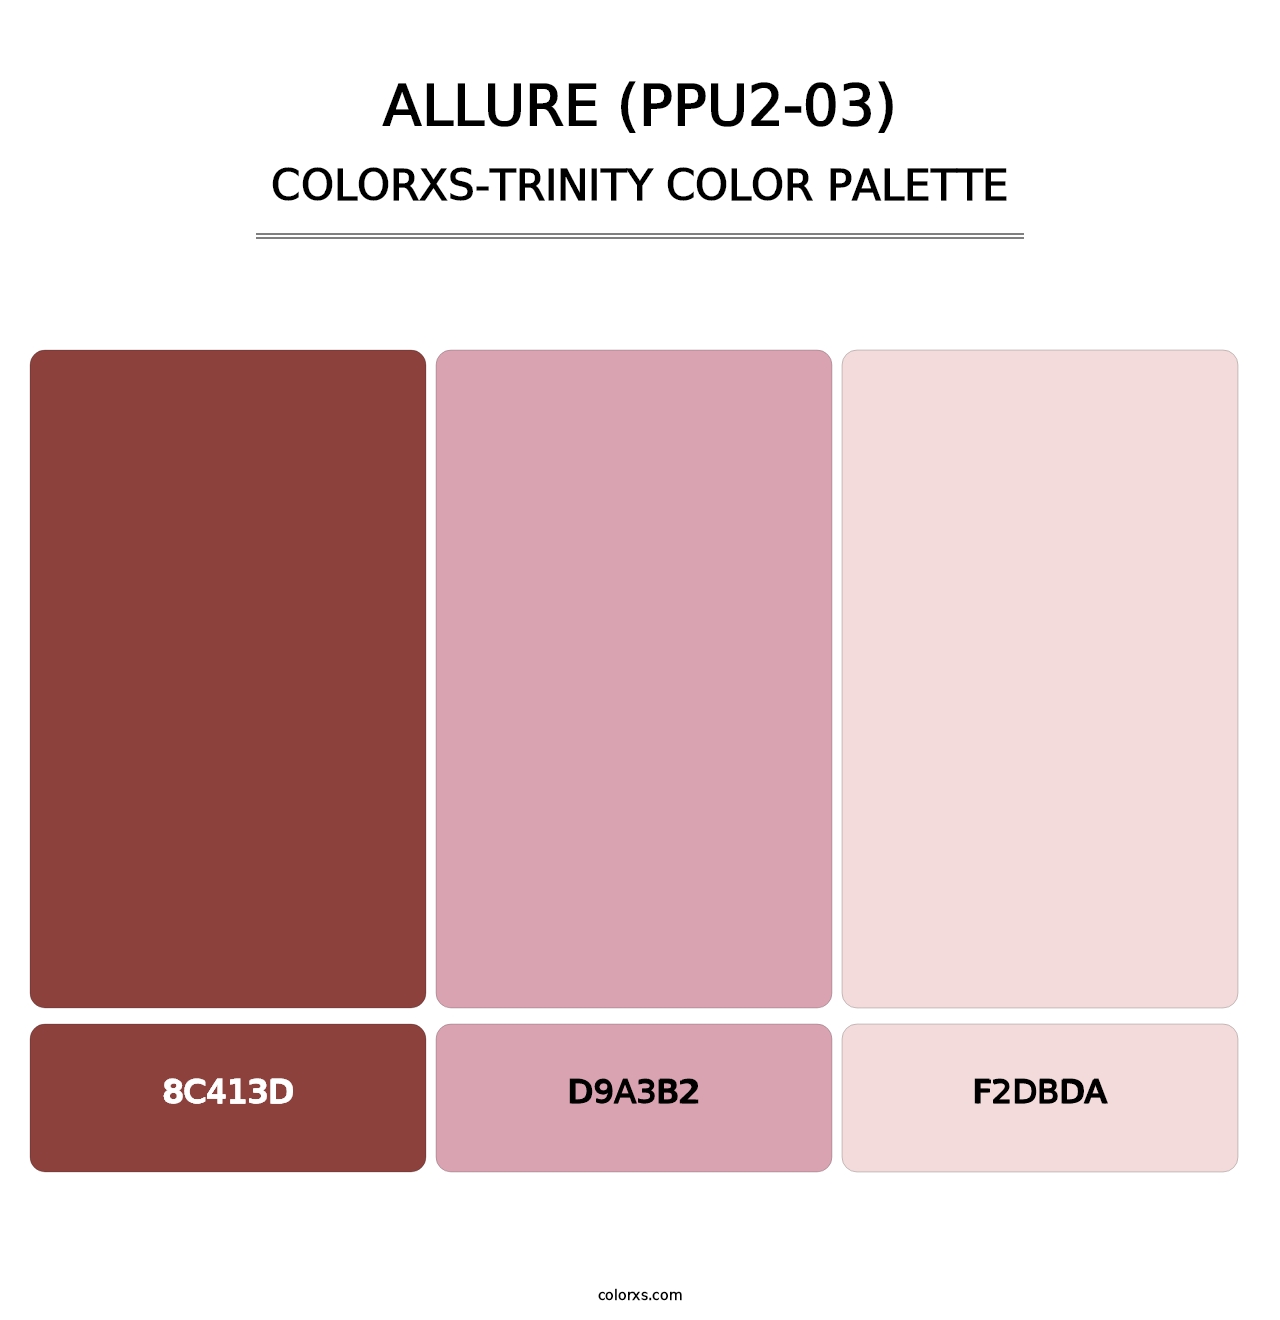 Allure (PPU2-03) - Colorxs Trinity Palette